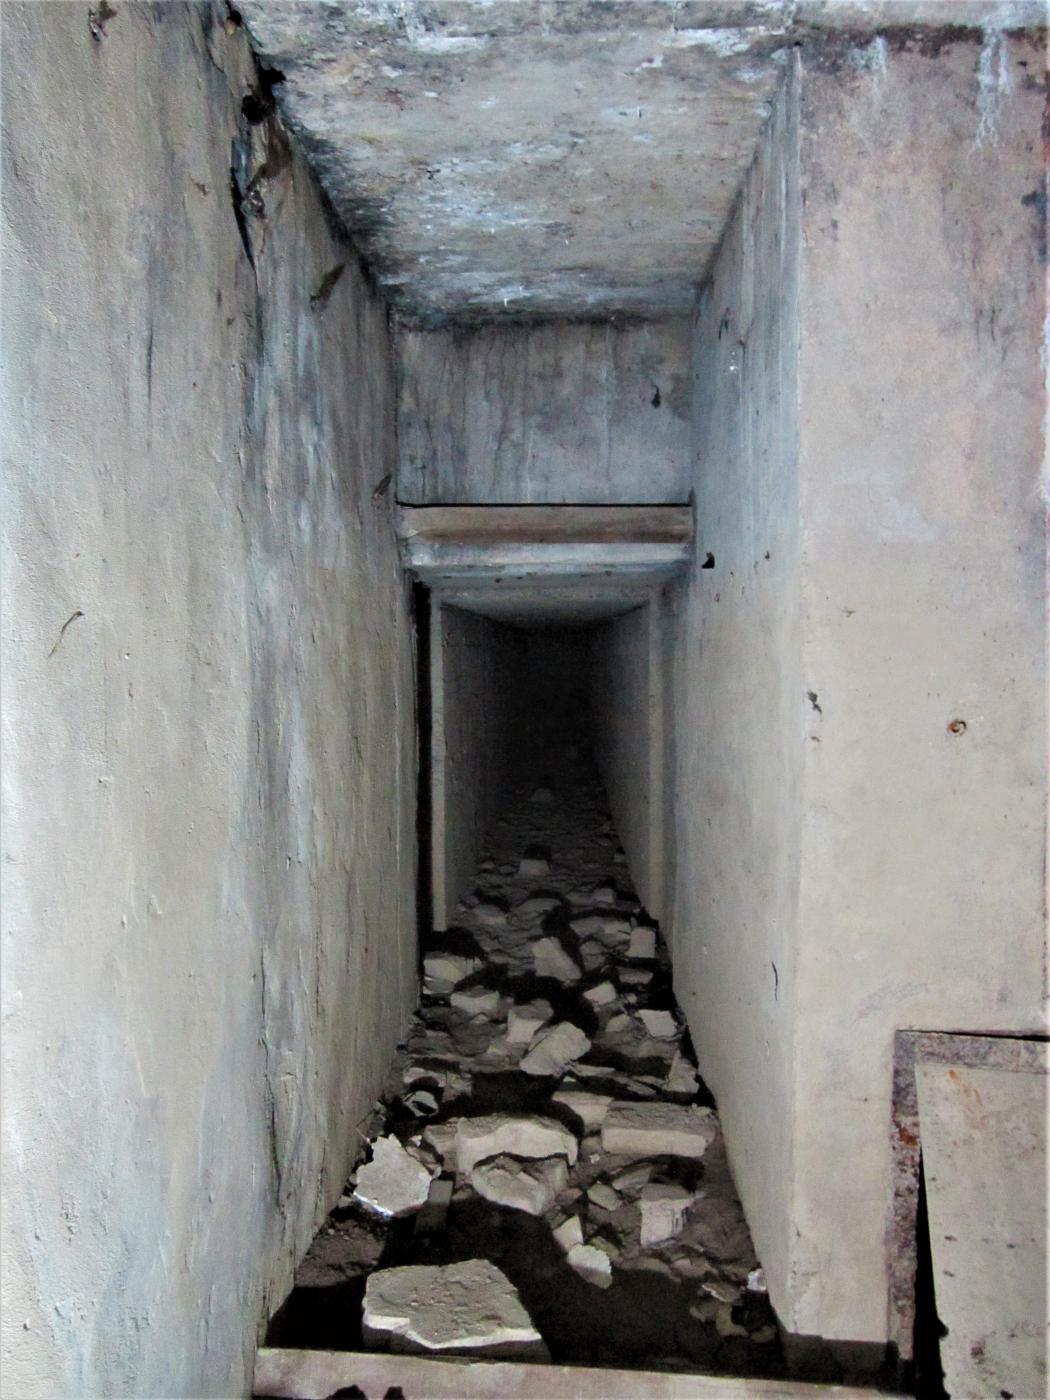 Ligne Maginot - SPORENINSEL - (Casemate d'infanterie - double) - Extrémité de la galerie d'accès
A droite les niches à mines et grenades